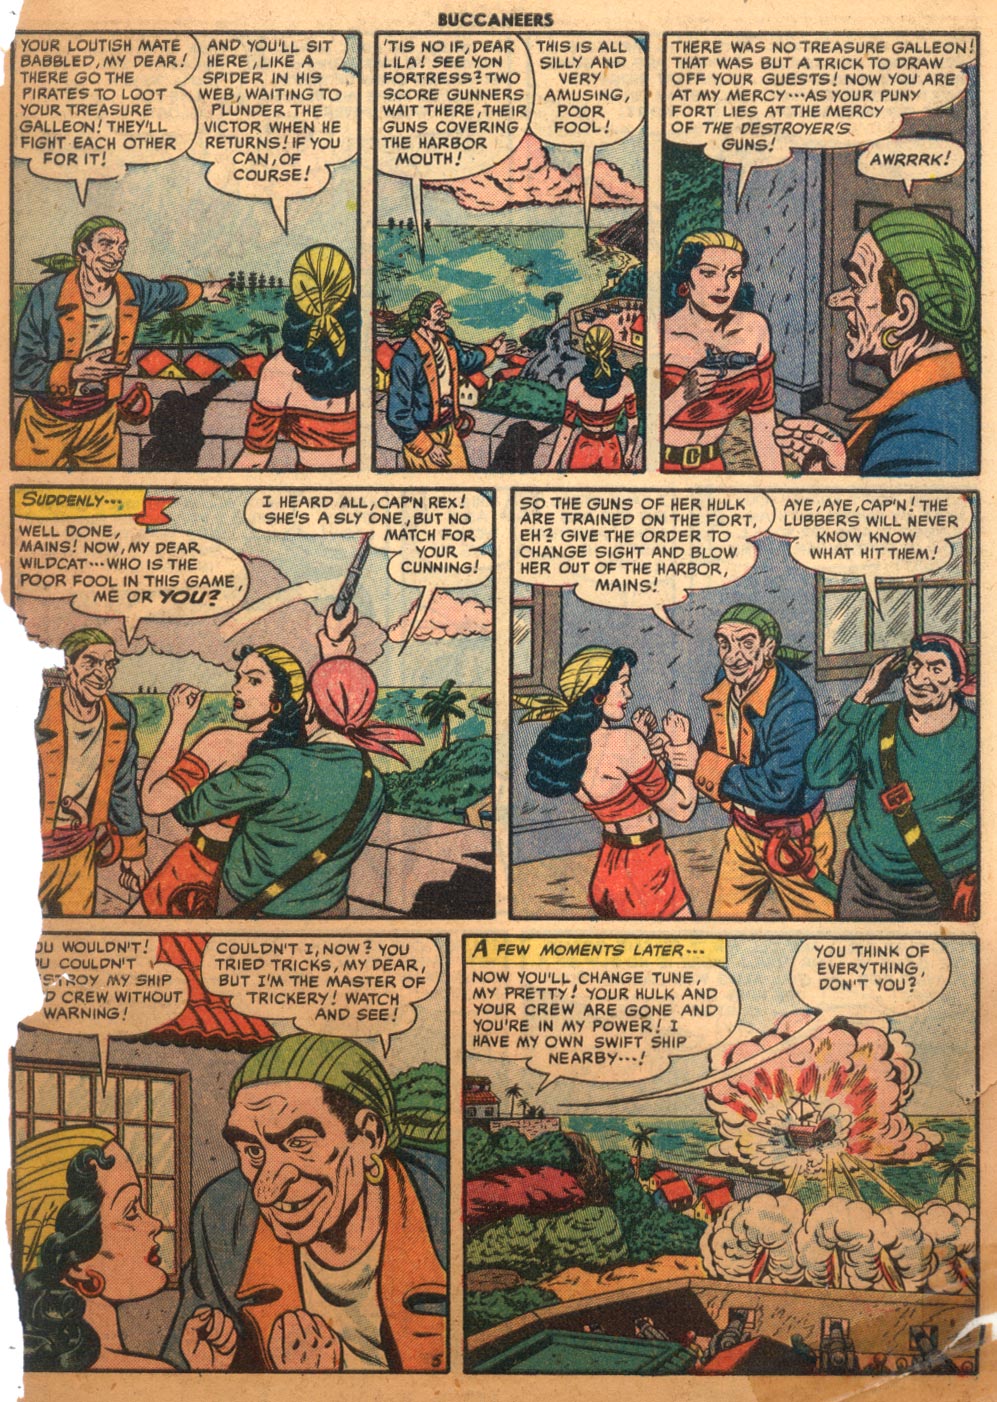 Read online Buccaneers comic -  Issue #26 - 47